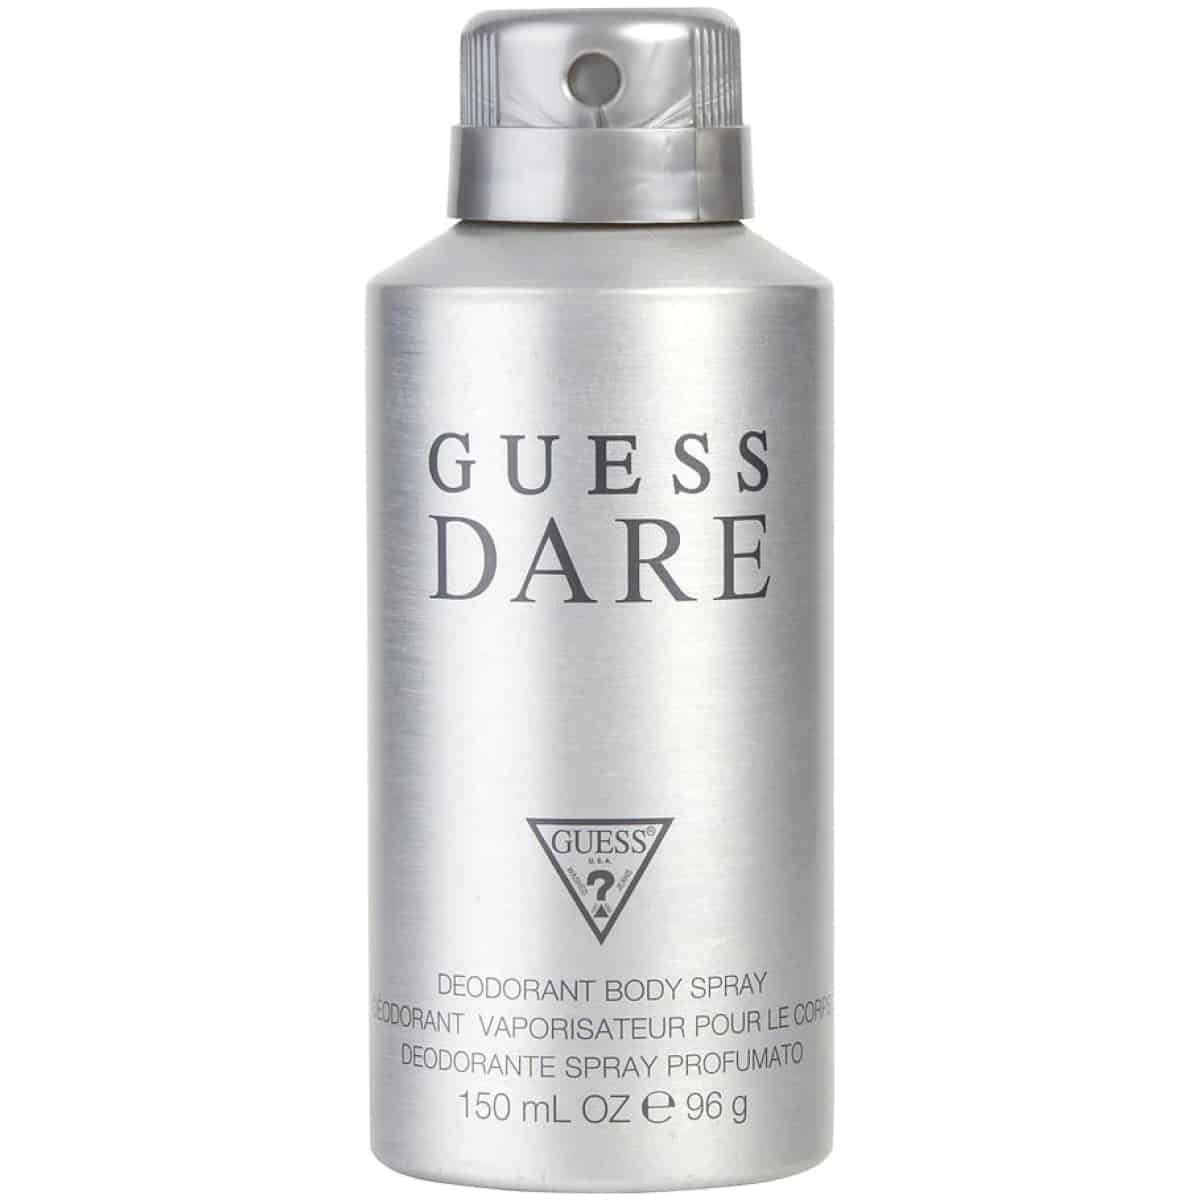 Guess Dare Deodorant For Men 150 ml